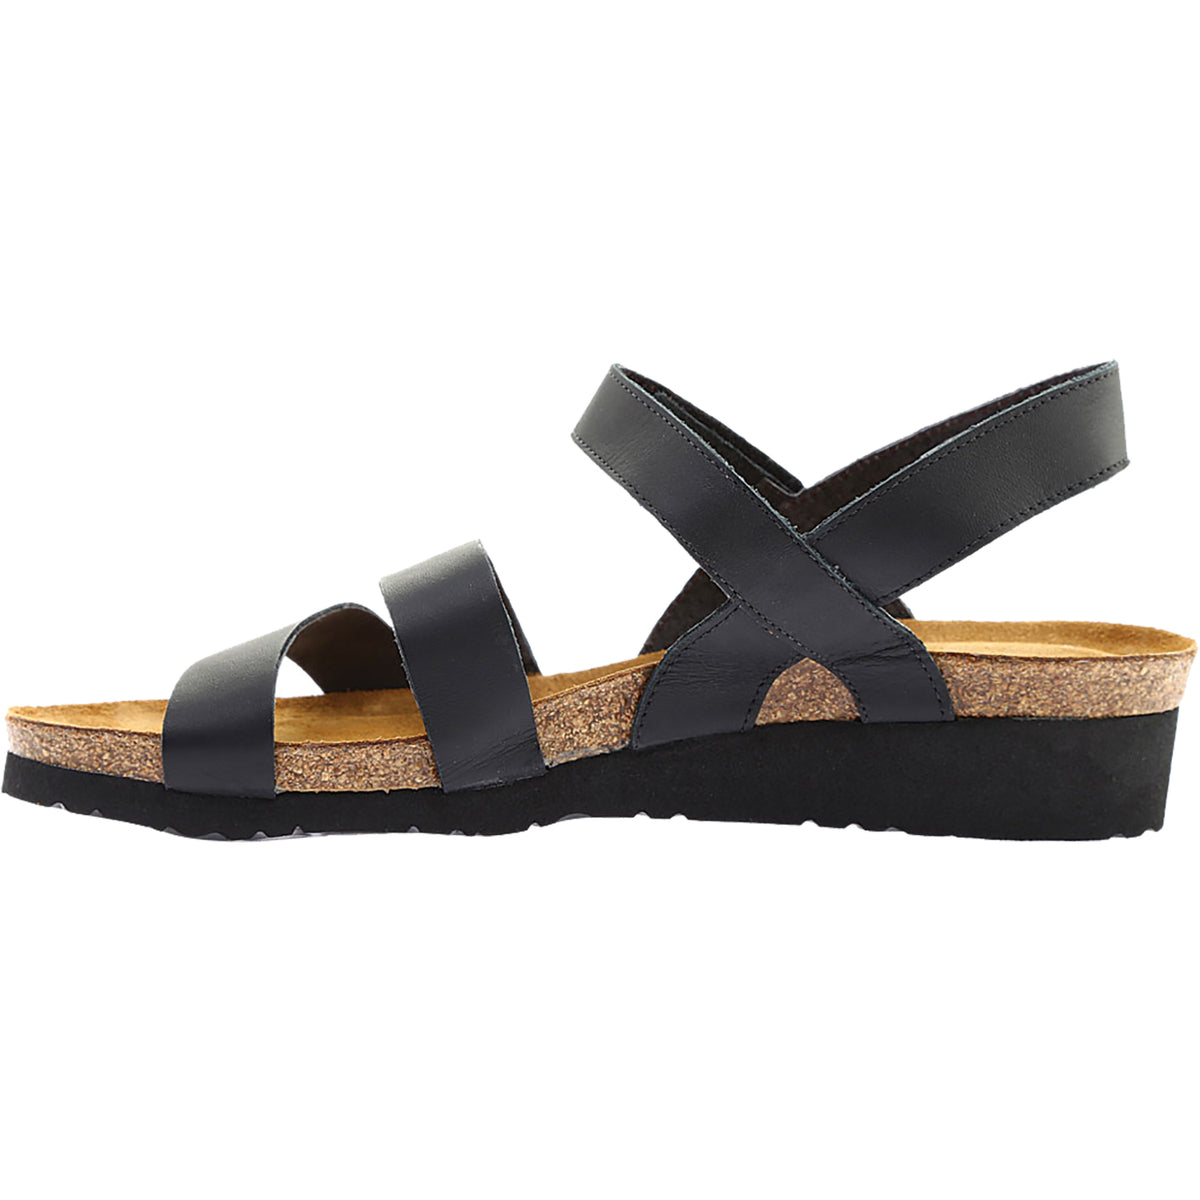 Naot Kayla | Naot Women's Wedge Sandals | Footwear etc.